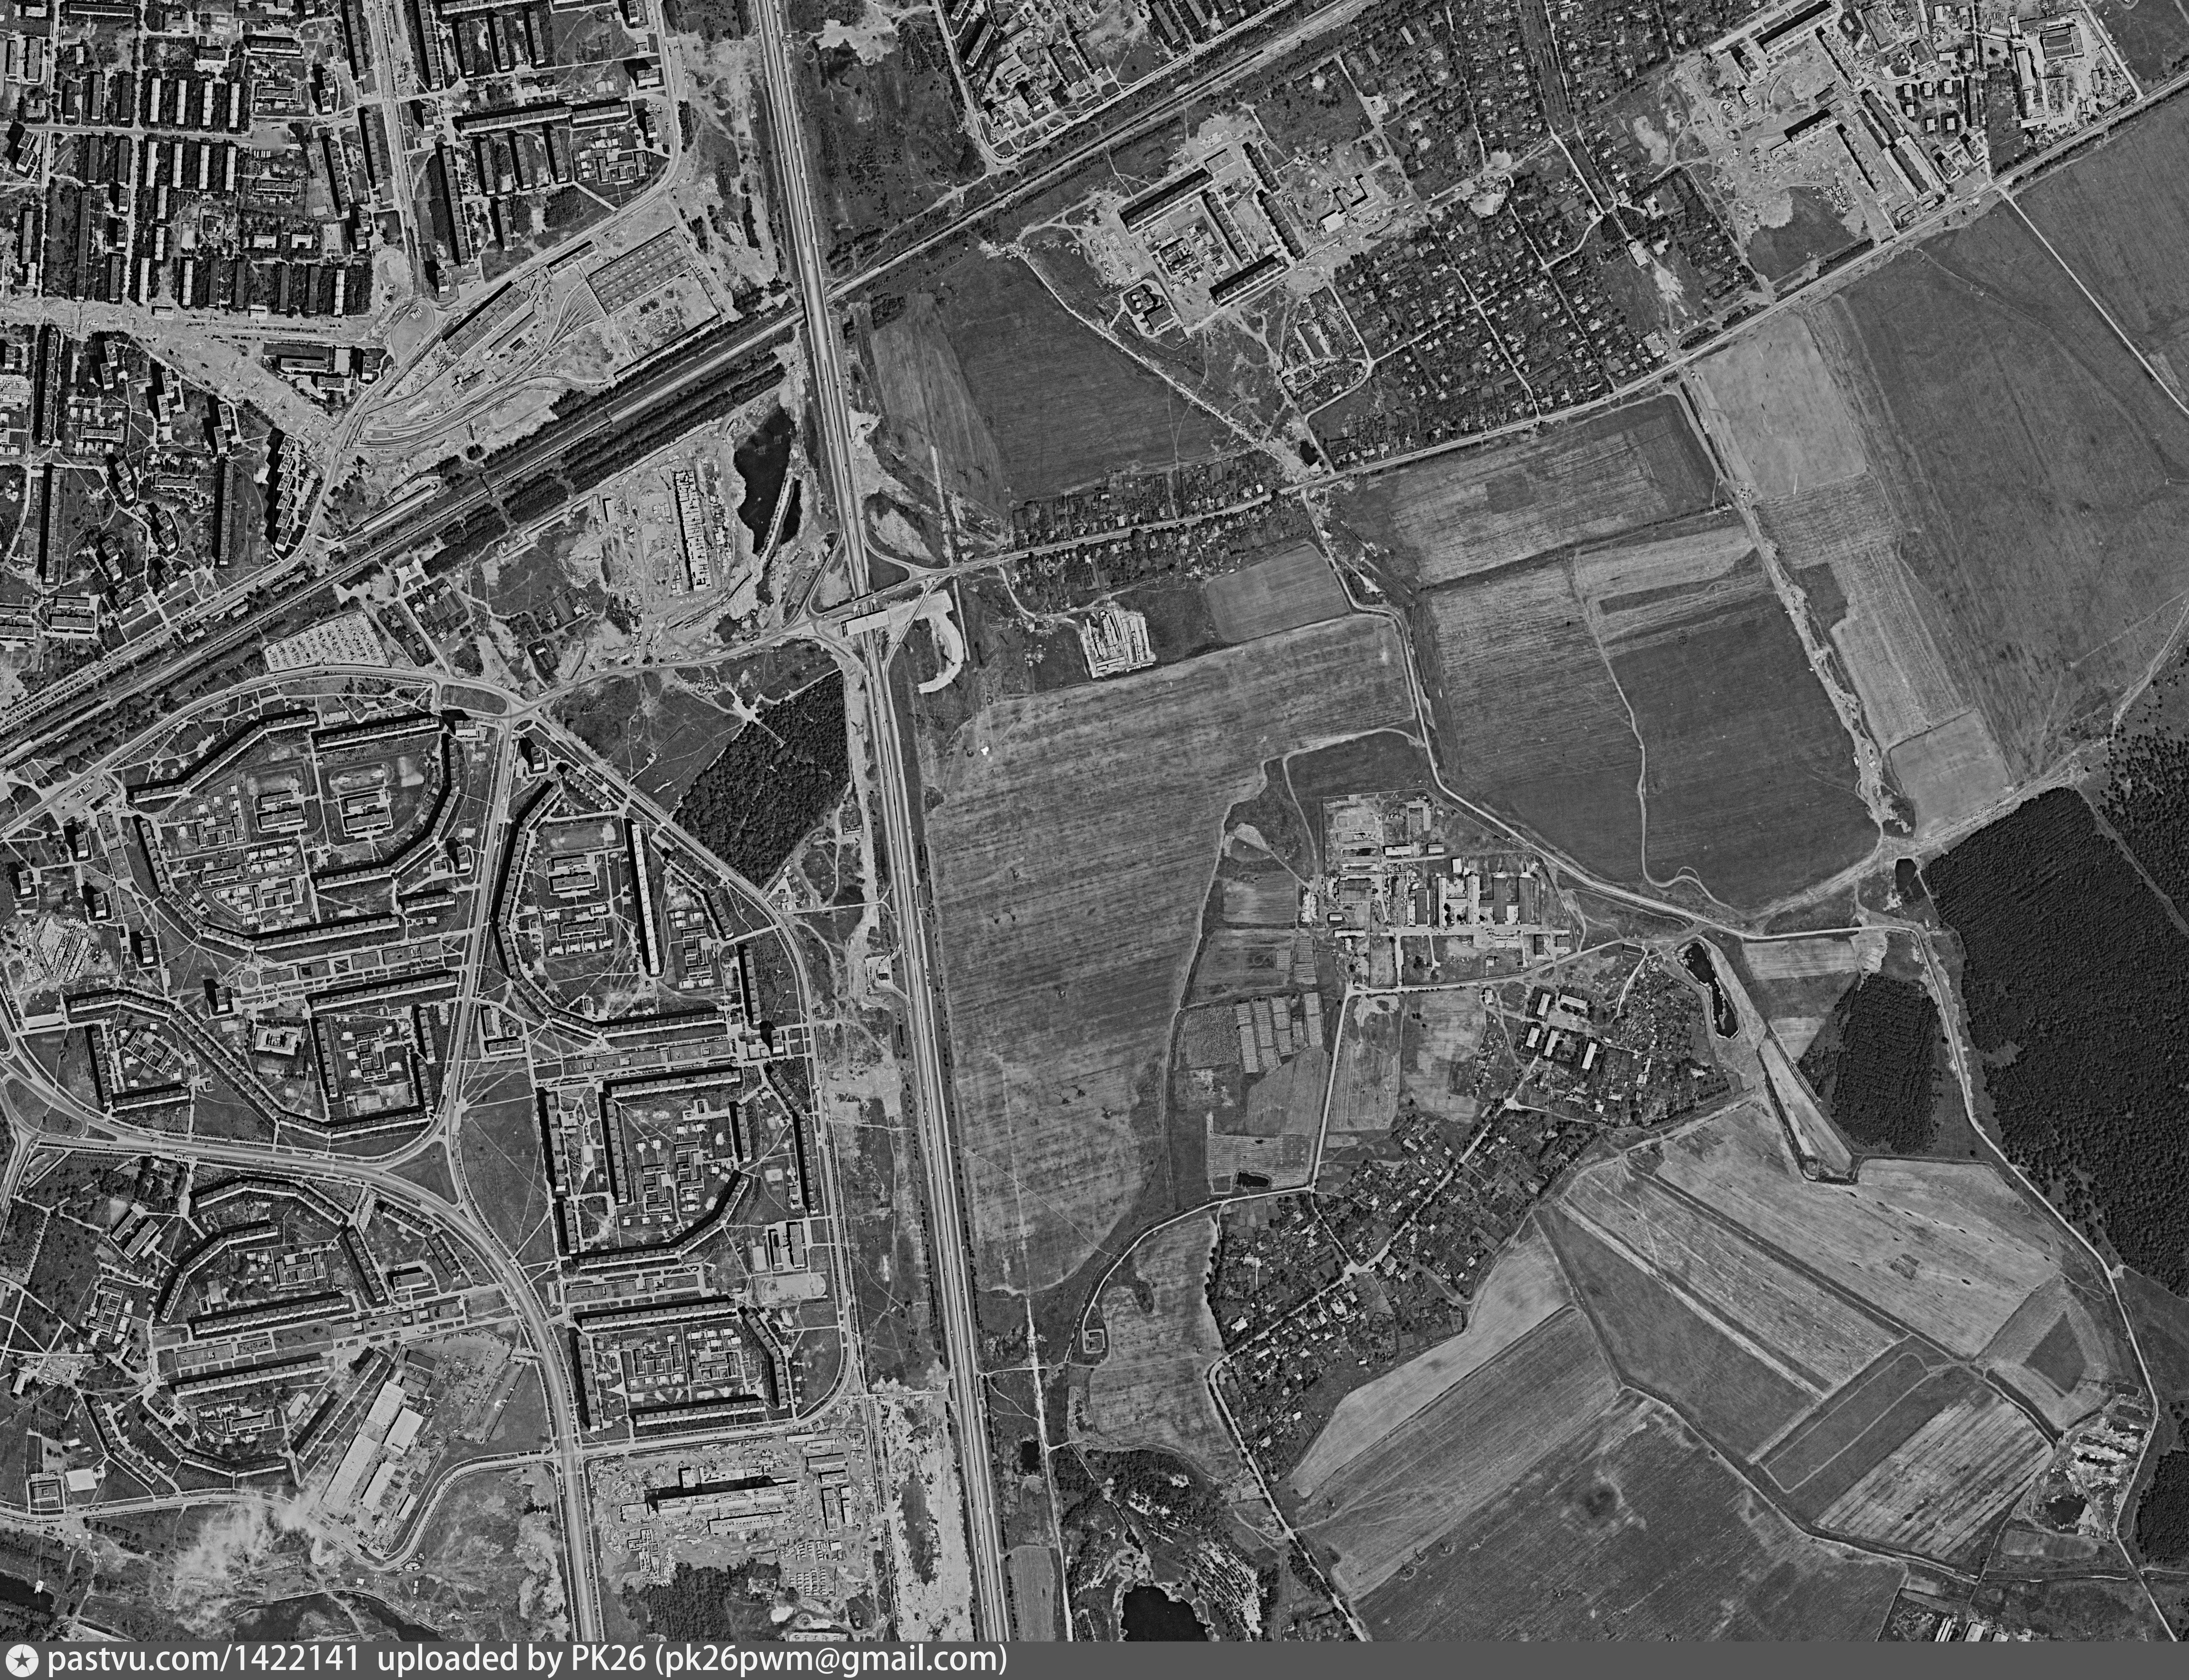 фото со спутника 1970 года